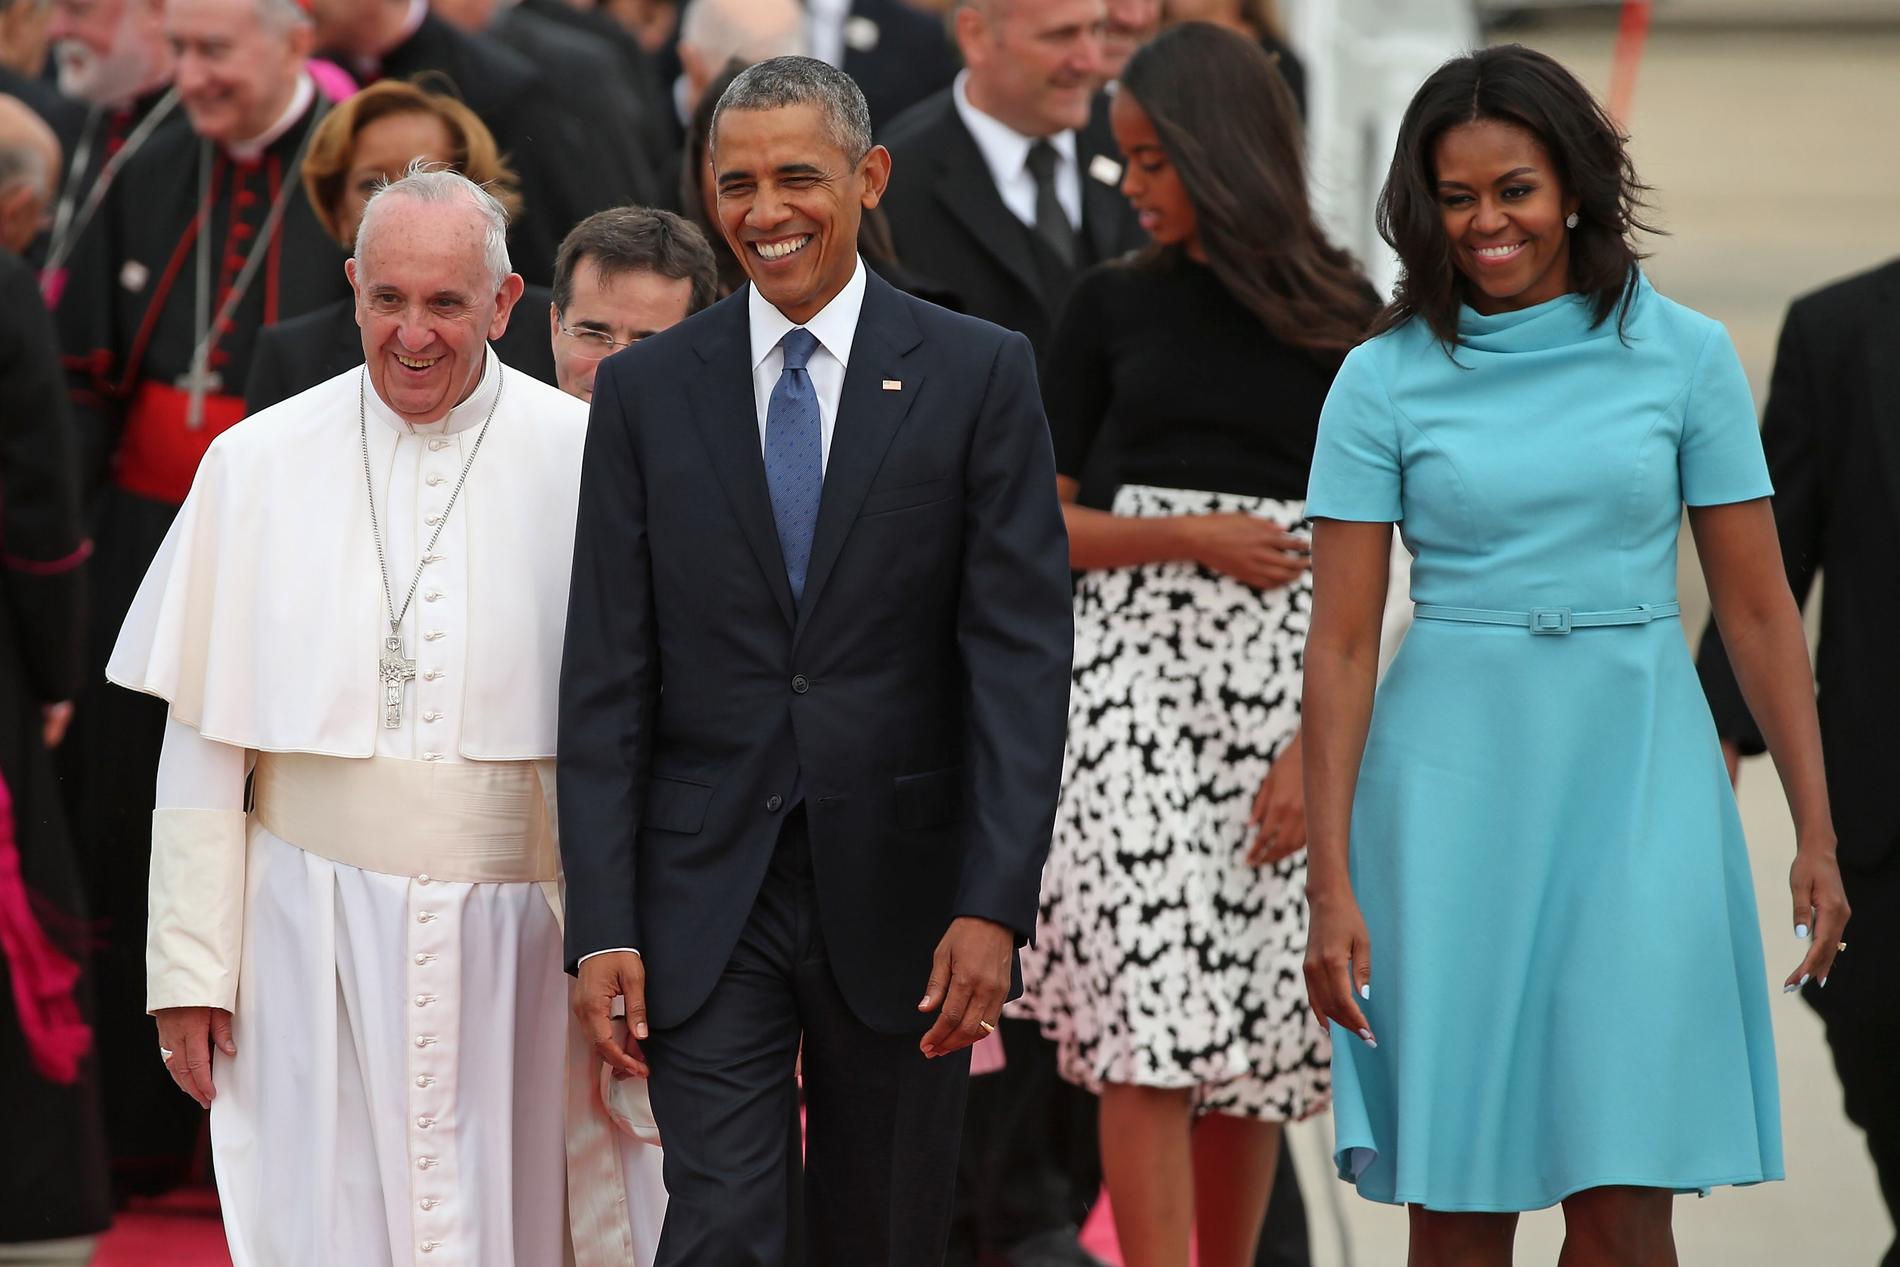 Påve Franciskus besöker USA. Här tillsammans med presidentparet Barack och Michelle Obama.